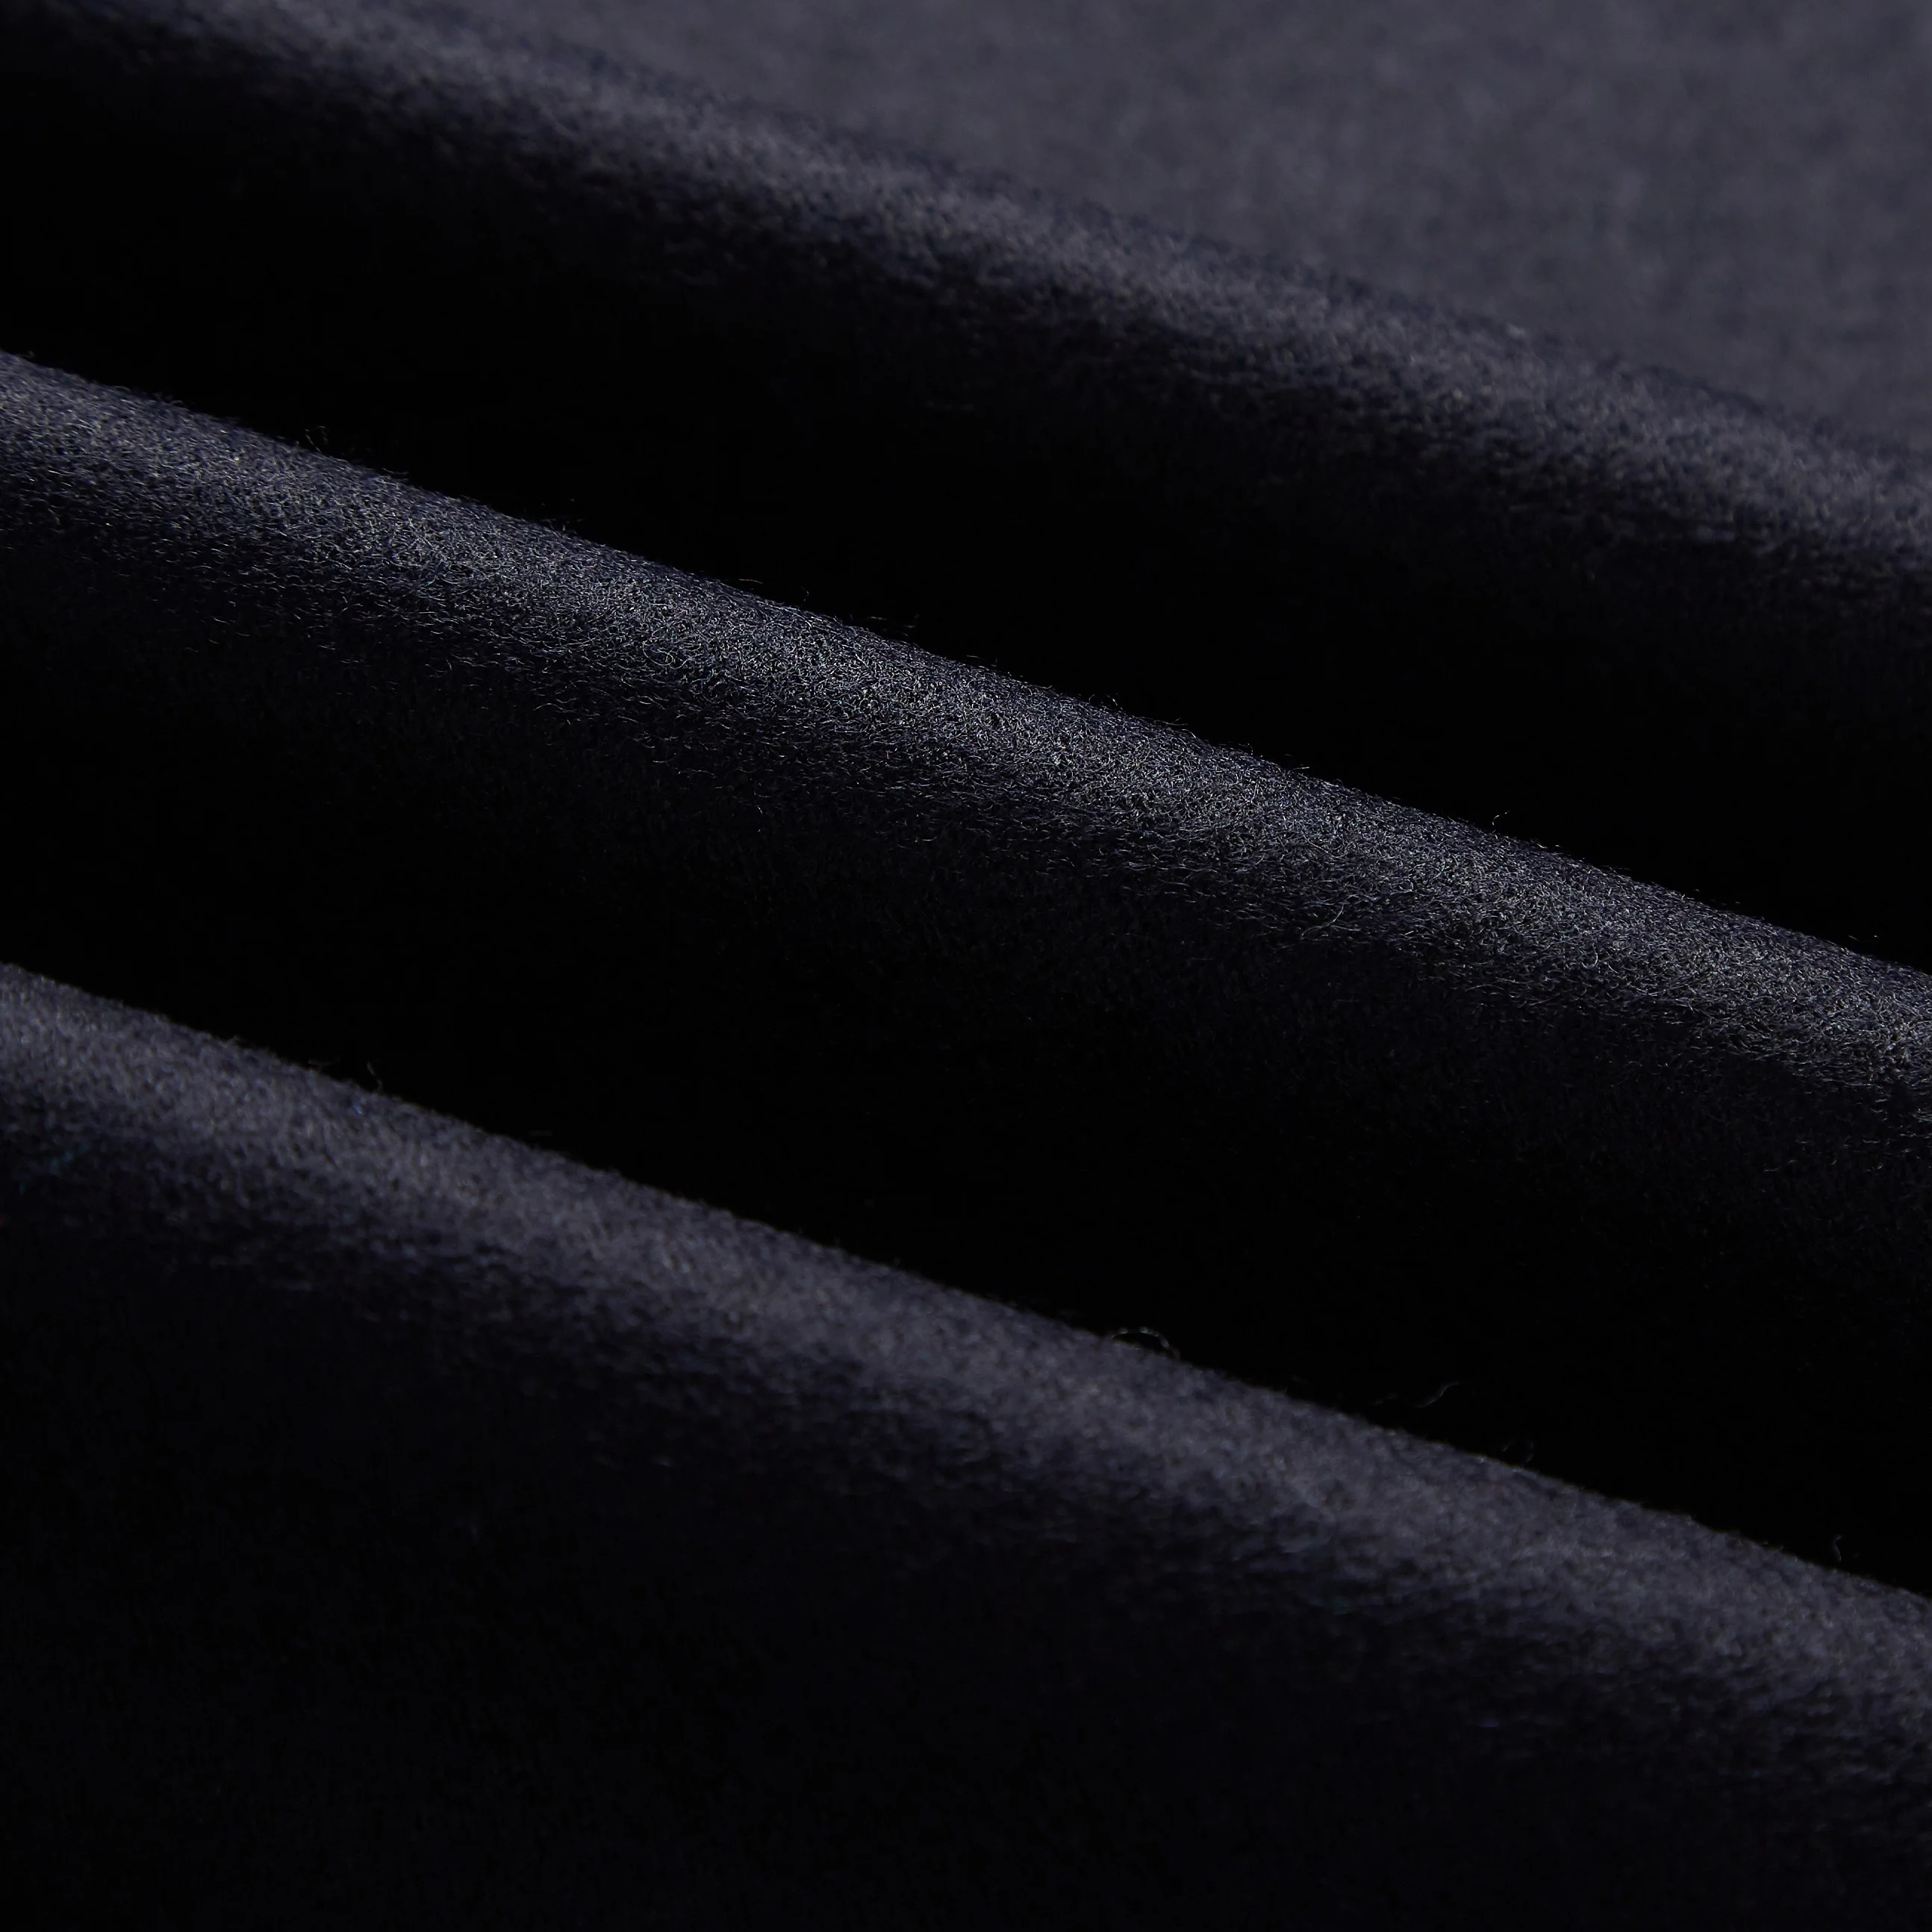 Высококачественная Роскошная итальянская кашемировая ткань, удобная мягкая кашемировая ткань из 70% шерсти мериноса для пальто